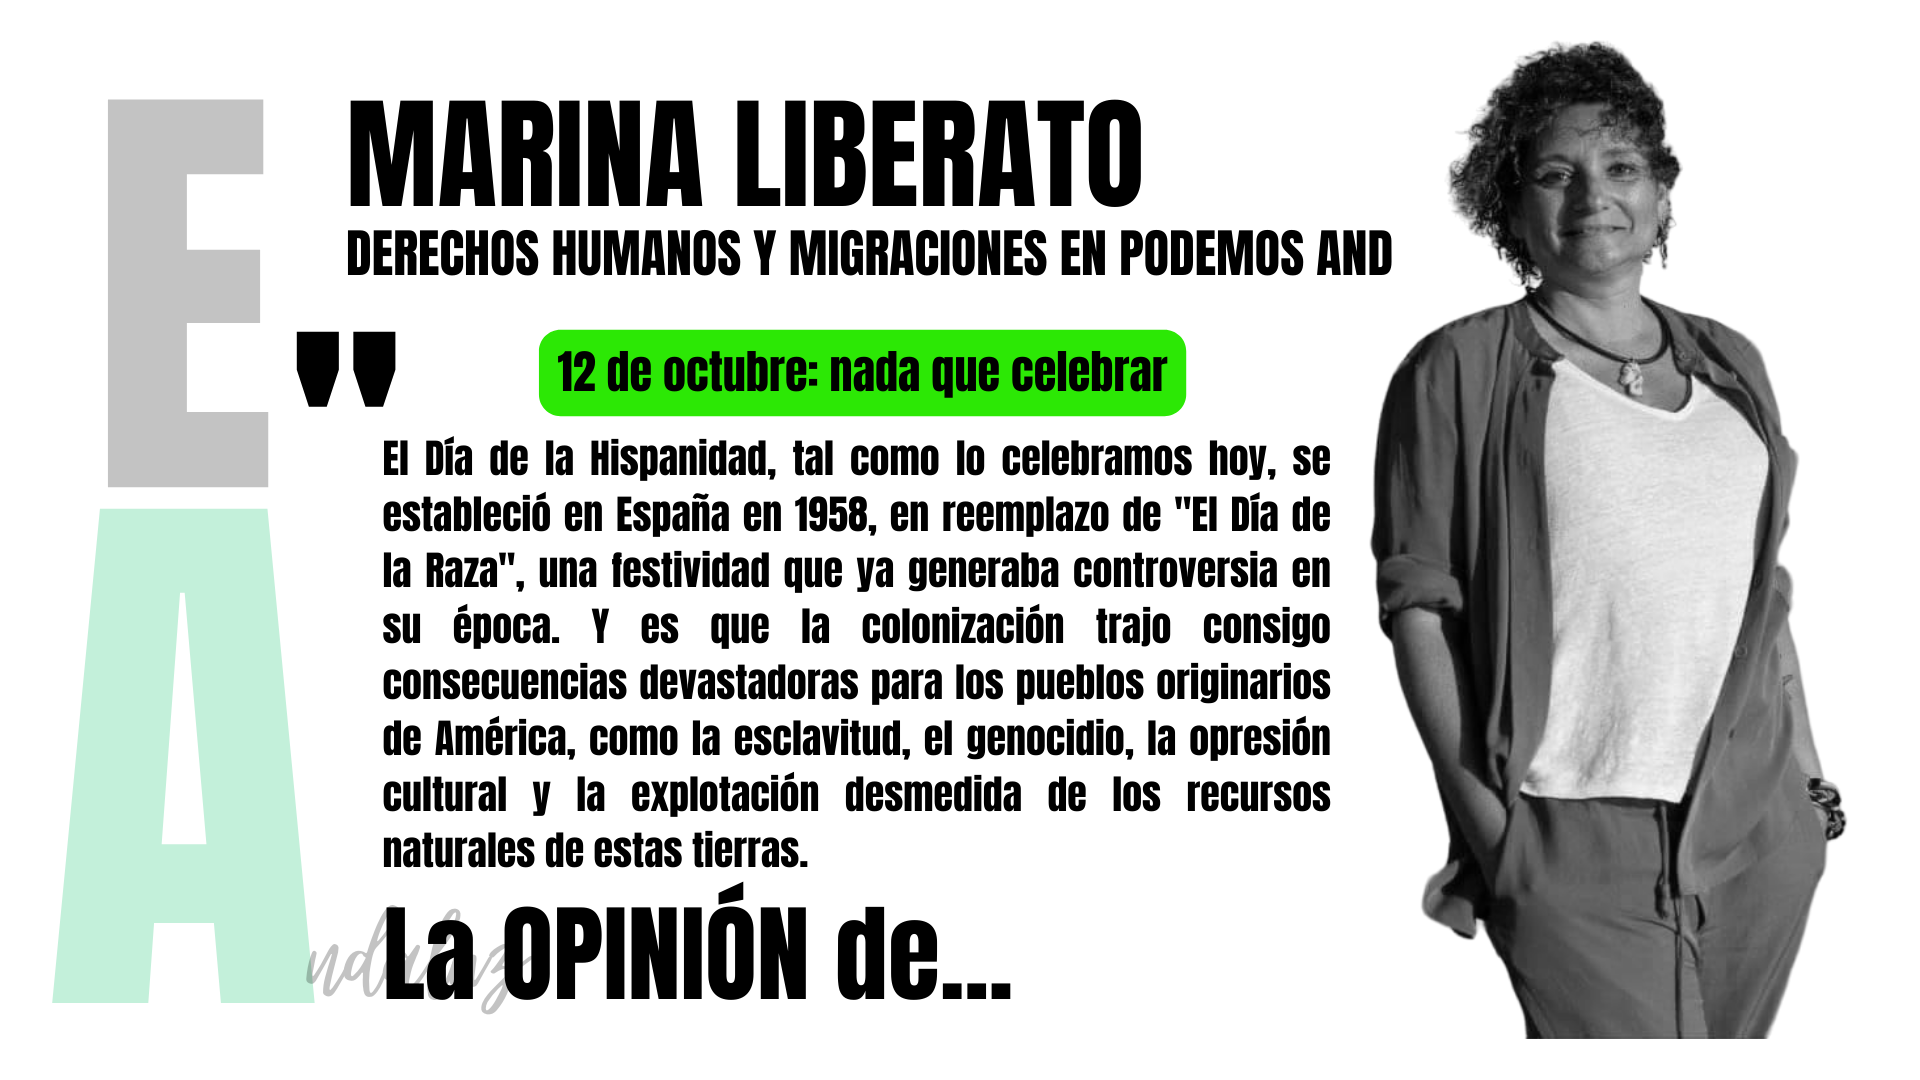 Artículo de Marina Liberato, responsable de Migraciones y Derechos Humanos en Podemos Andalucía: "12 de octubre: nada que celebrar".